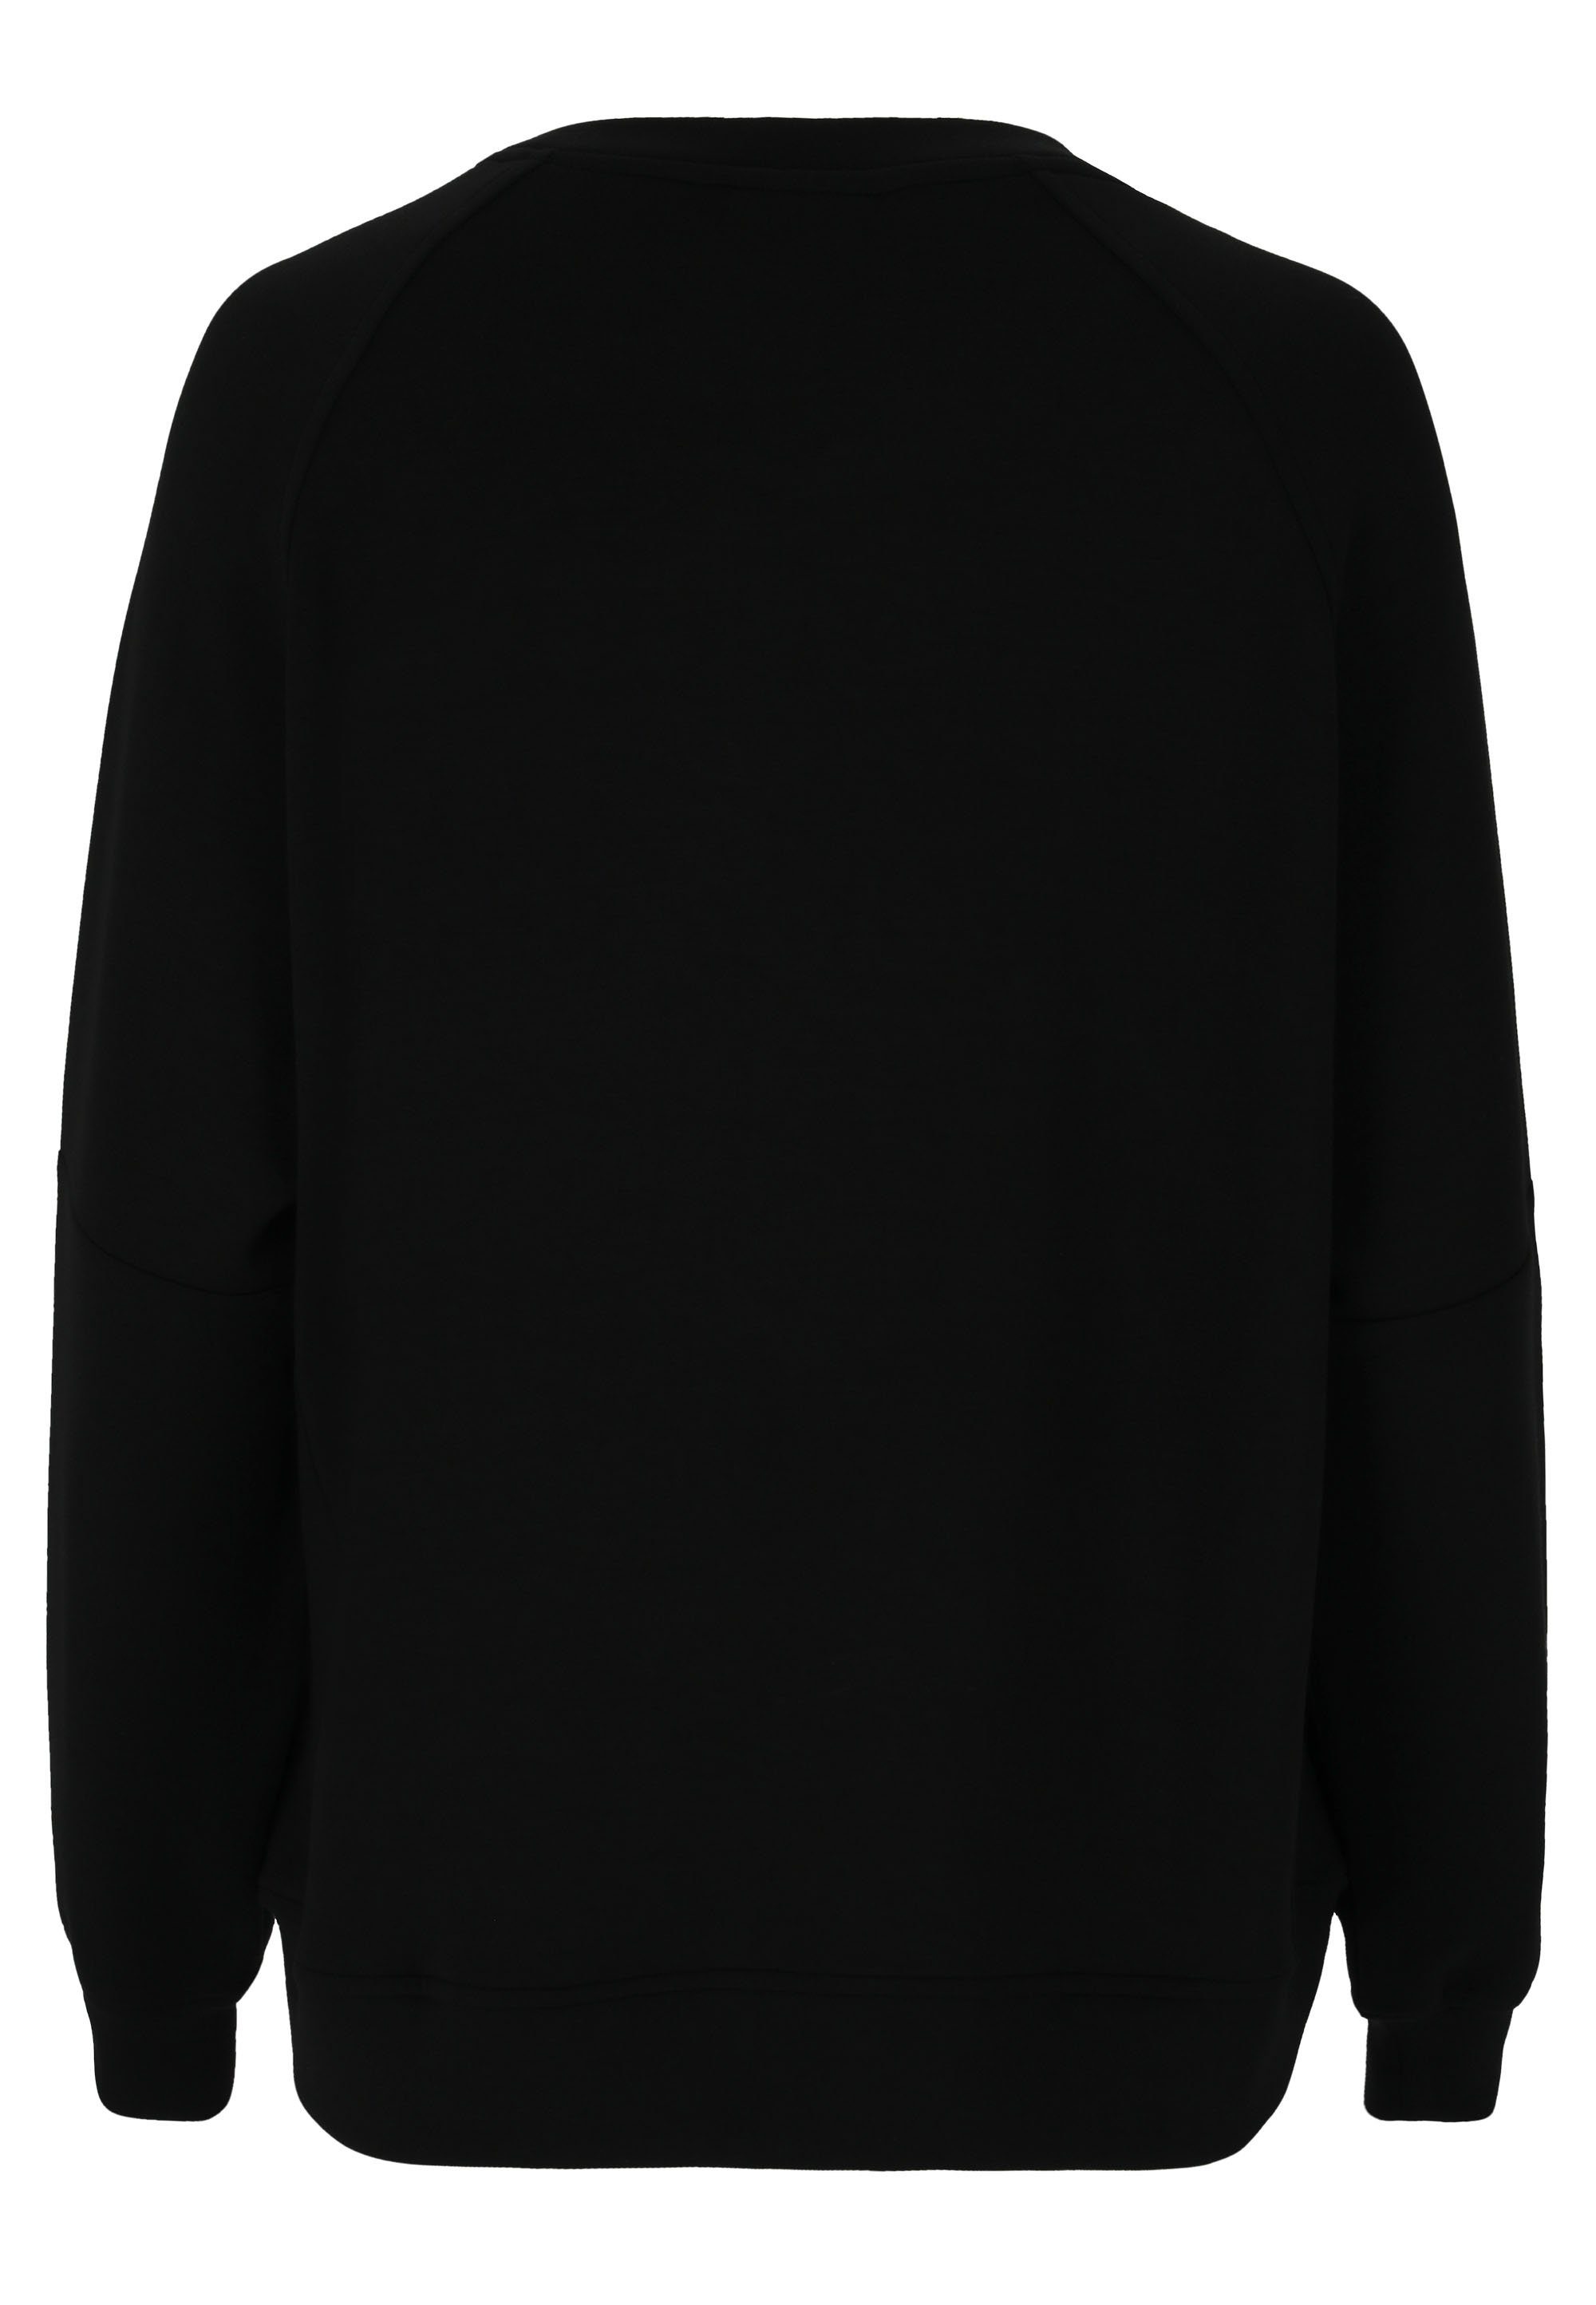 ATHLECIA Sweatshirt Jacey Material schwarz weichem aus extra